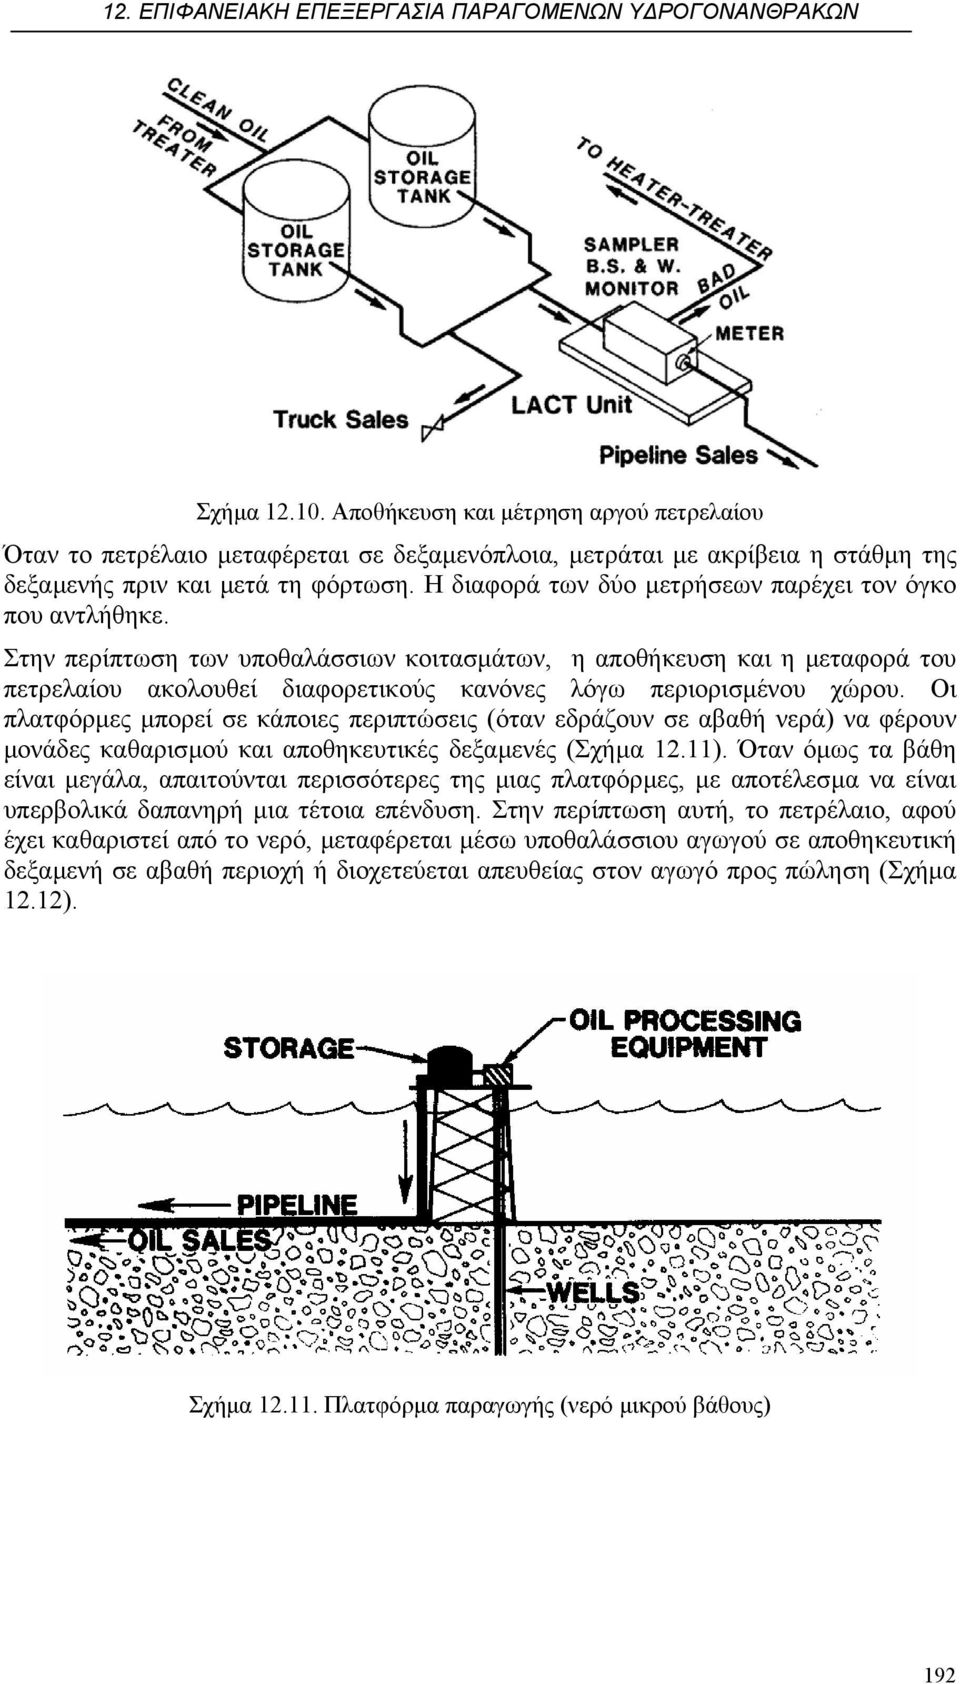 Στην περίπτωση των υποθαλάσσιων κοιτασµάτων, η αποθήκευση και η µεταφορά του πετρελαίου ακολουθεί διαφορετικούς κανόνες λόγω περιορισµένου χώρου.